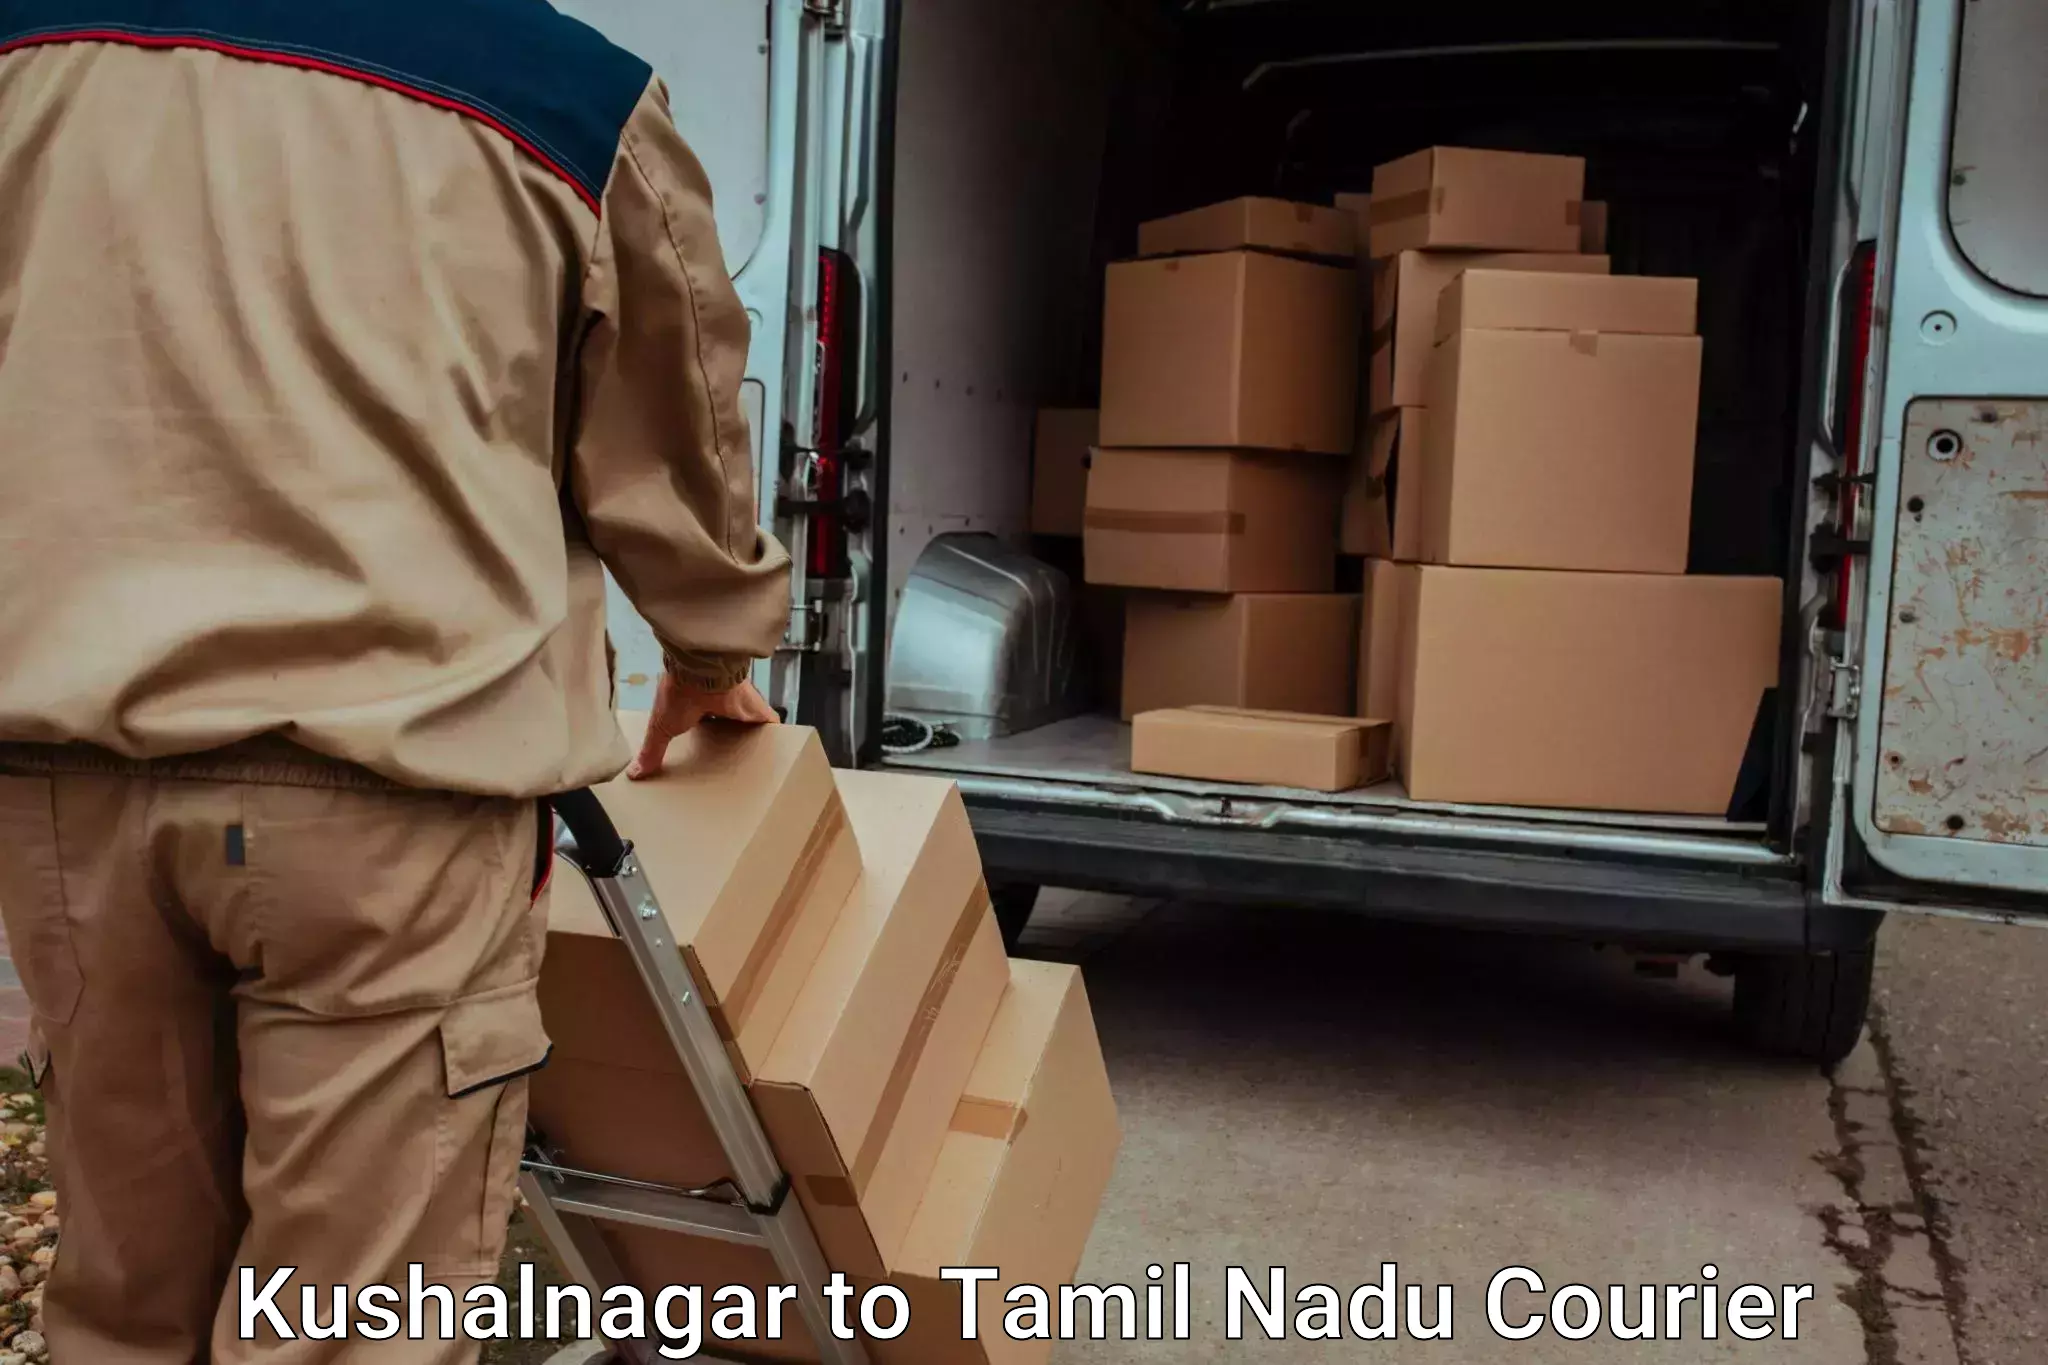 Professional moving assistance Kushalnagar to Eraiyur